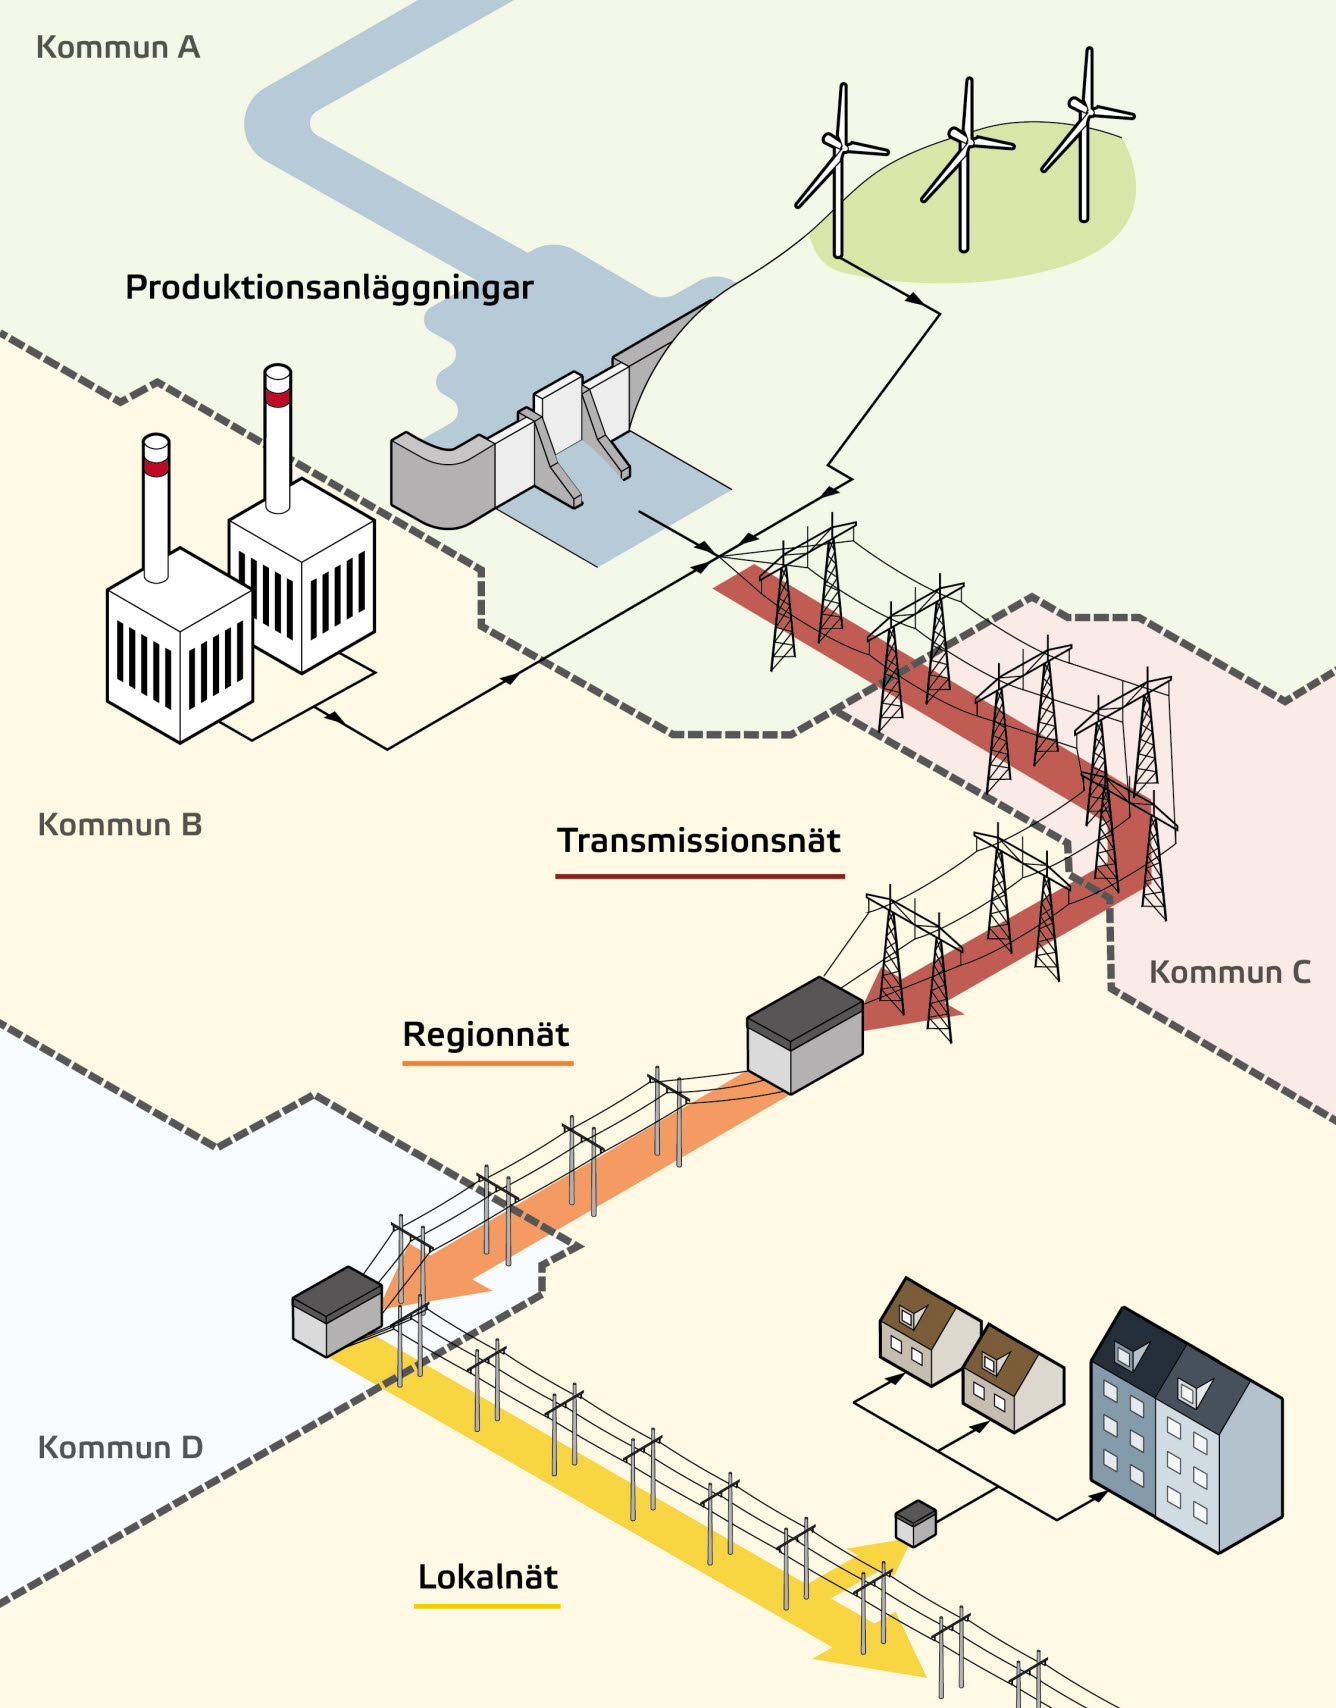 Förenklad skiss av hur el transporteras från produktionsanläggning till användare via elnätsanläggningar i fyra kommuner. 